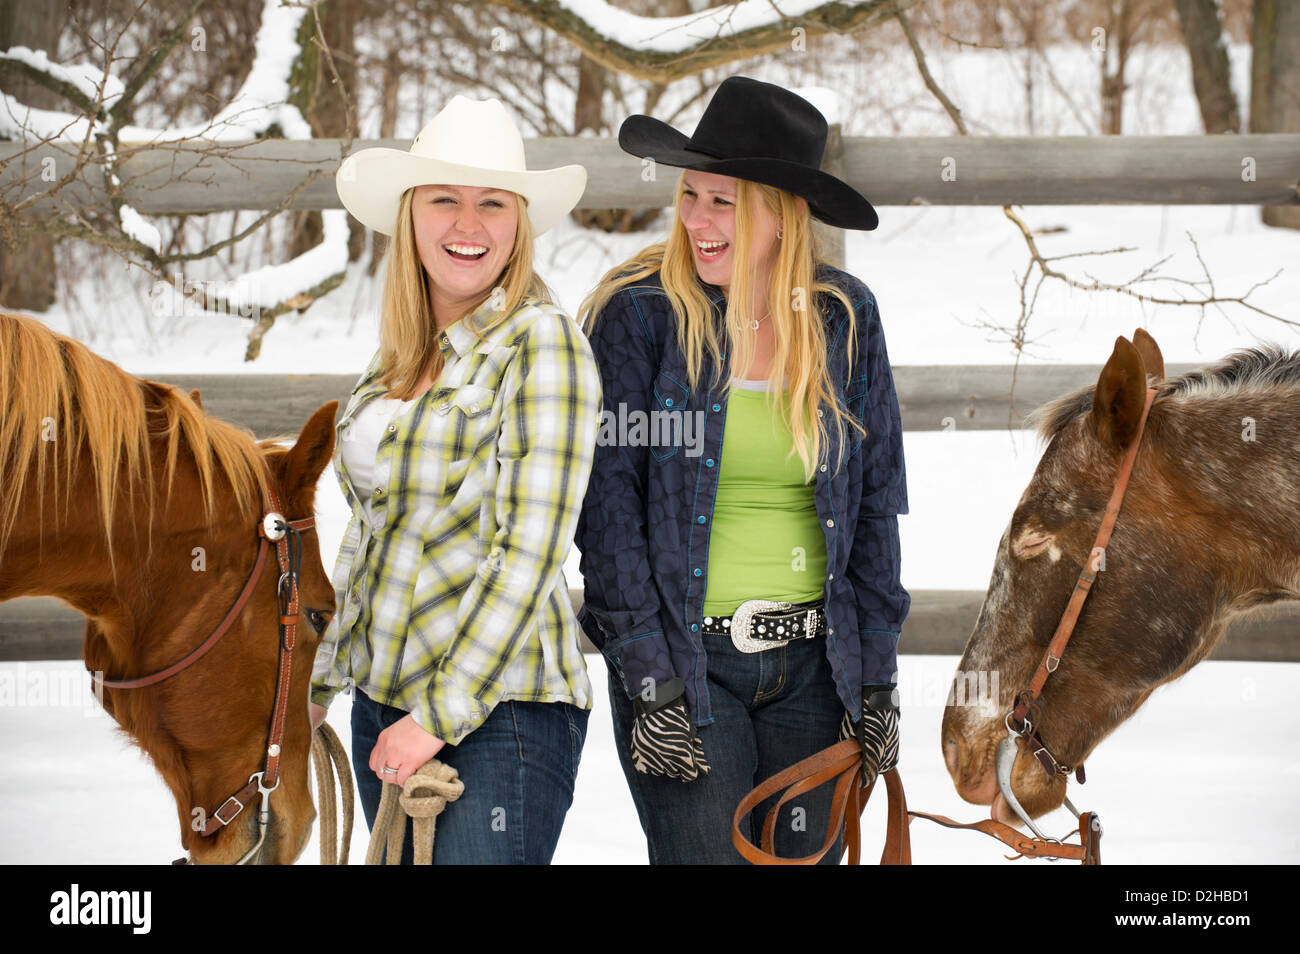 Deux cowgirls rire, plaisanter et s'amuser, debout à côté de leurs chevaux en dehors de la neige en hiver, les vêtements de style occidental. Banque D'Images